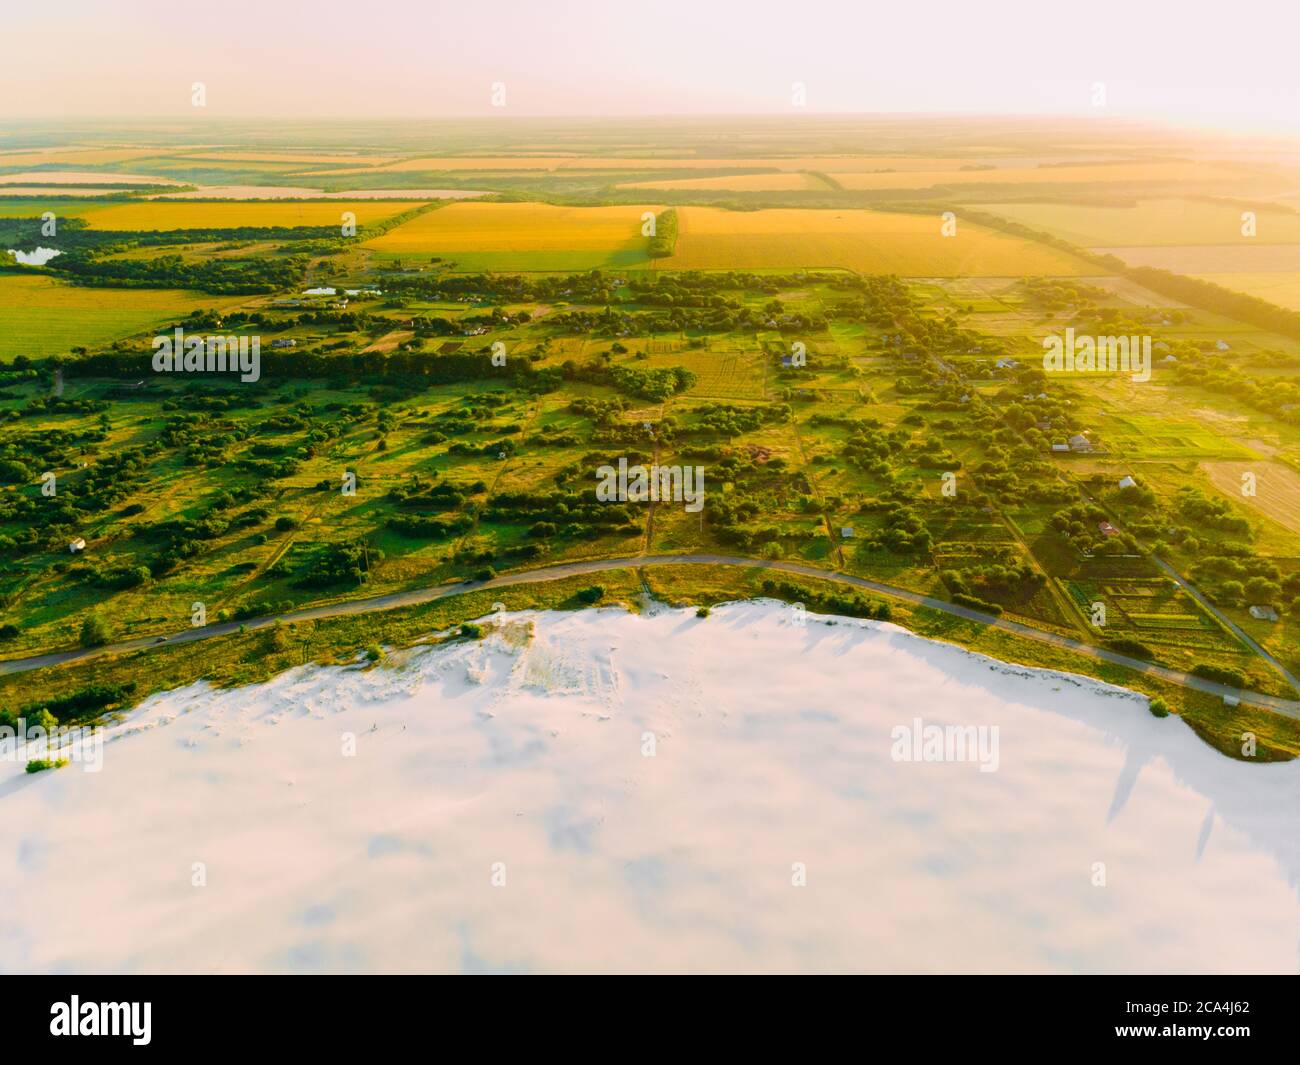 Die Grenze des Wüstengebietes und der grünen Wiese mit dem Fluss ist das Ergebnis der menschlichen zerstörerischen Tätigkeit in der Umwelt. Blick von der Drohne. Stockfoto